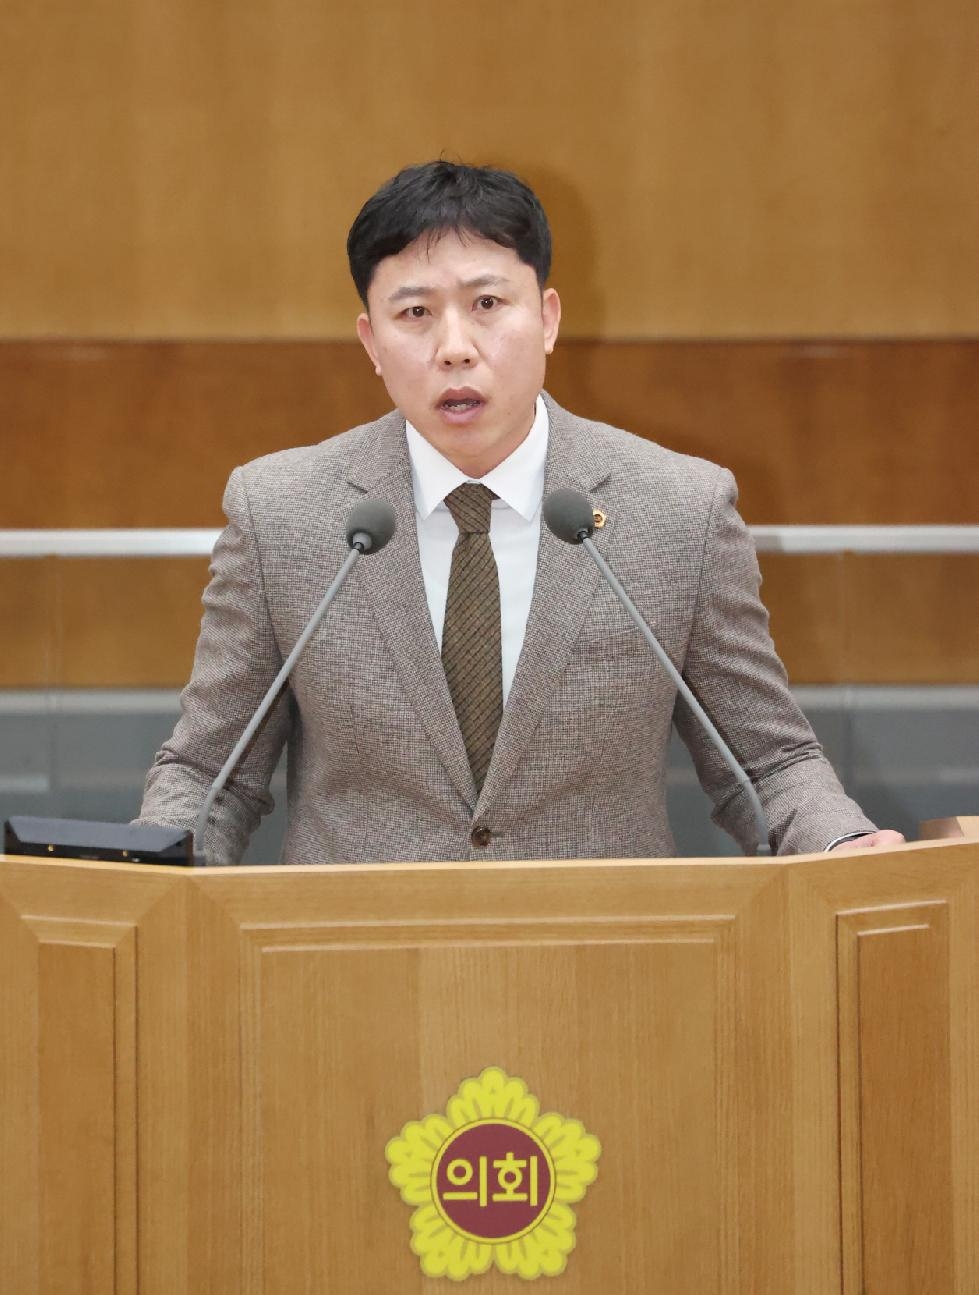 경기도의회 오세풍 의원, 김포 원거리 통학학생 통학여건 개선 촉구